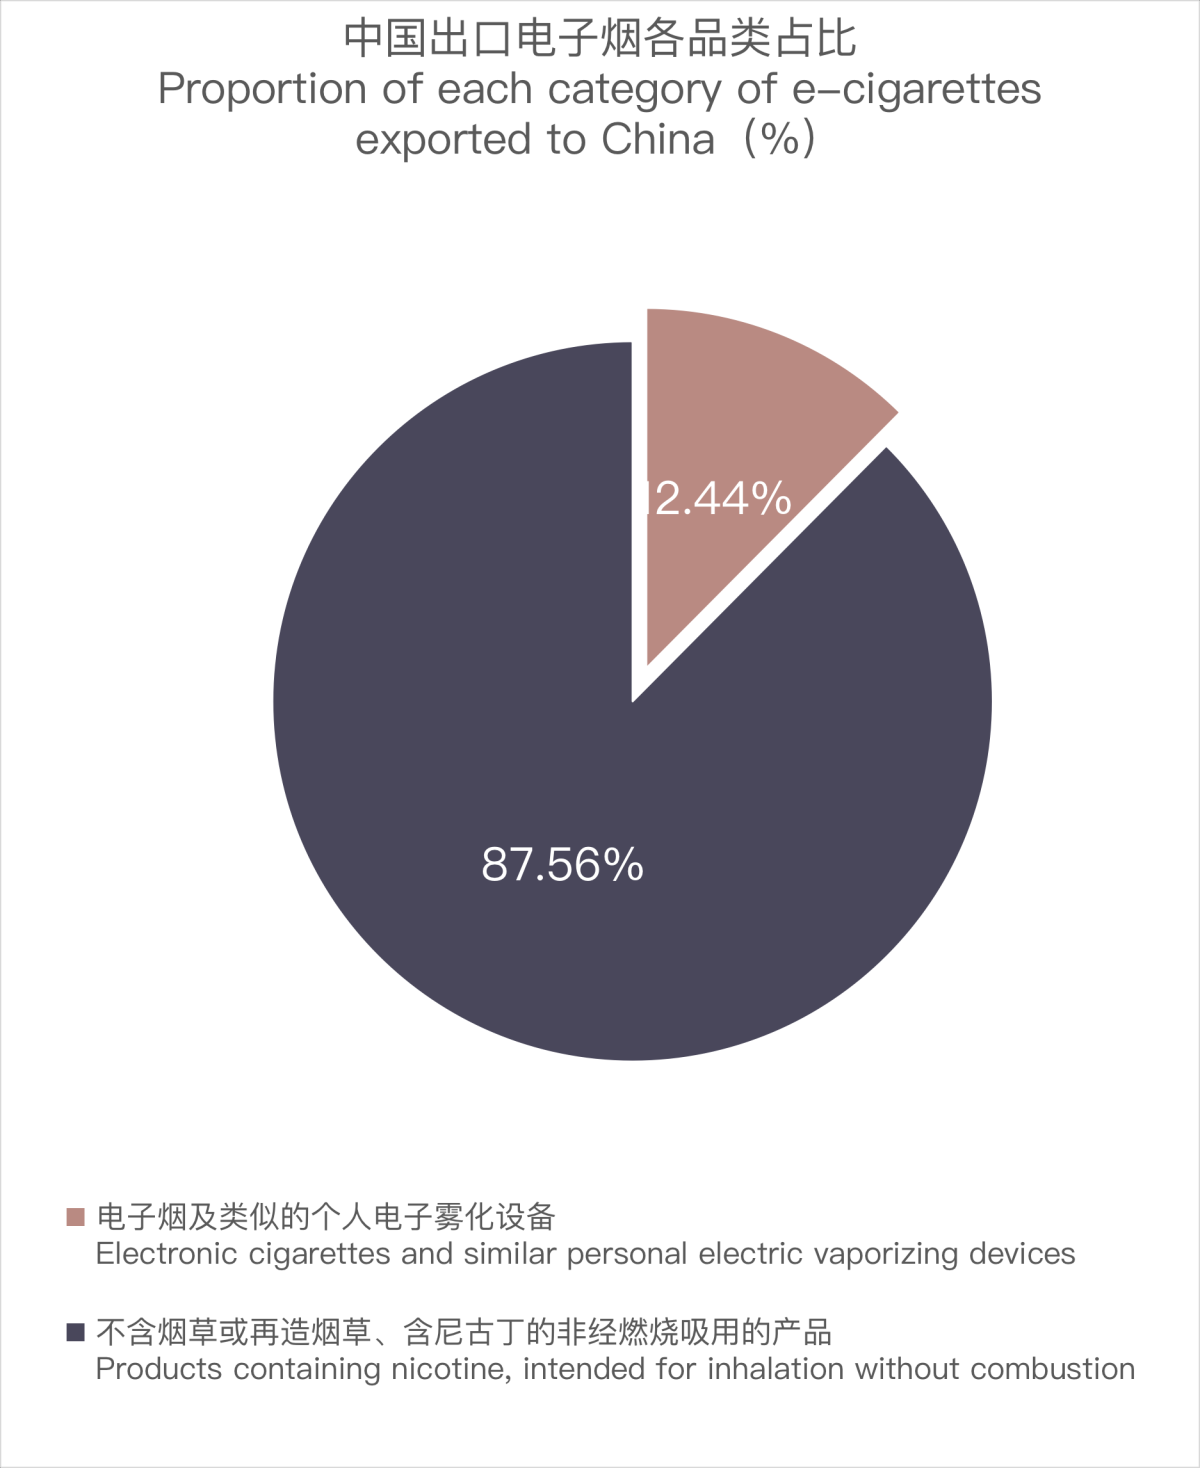 3月中国出口比利时电子烟约326万美元 环比下降21.54%